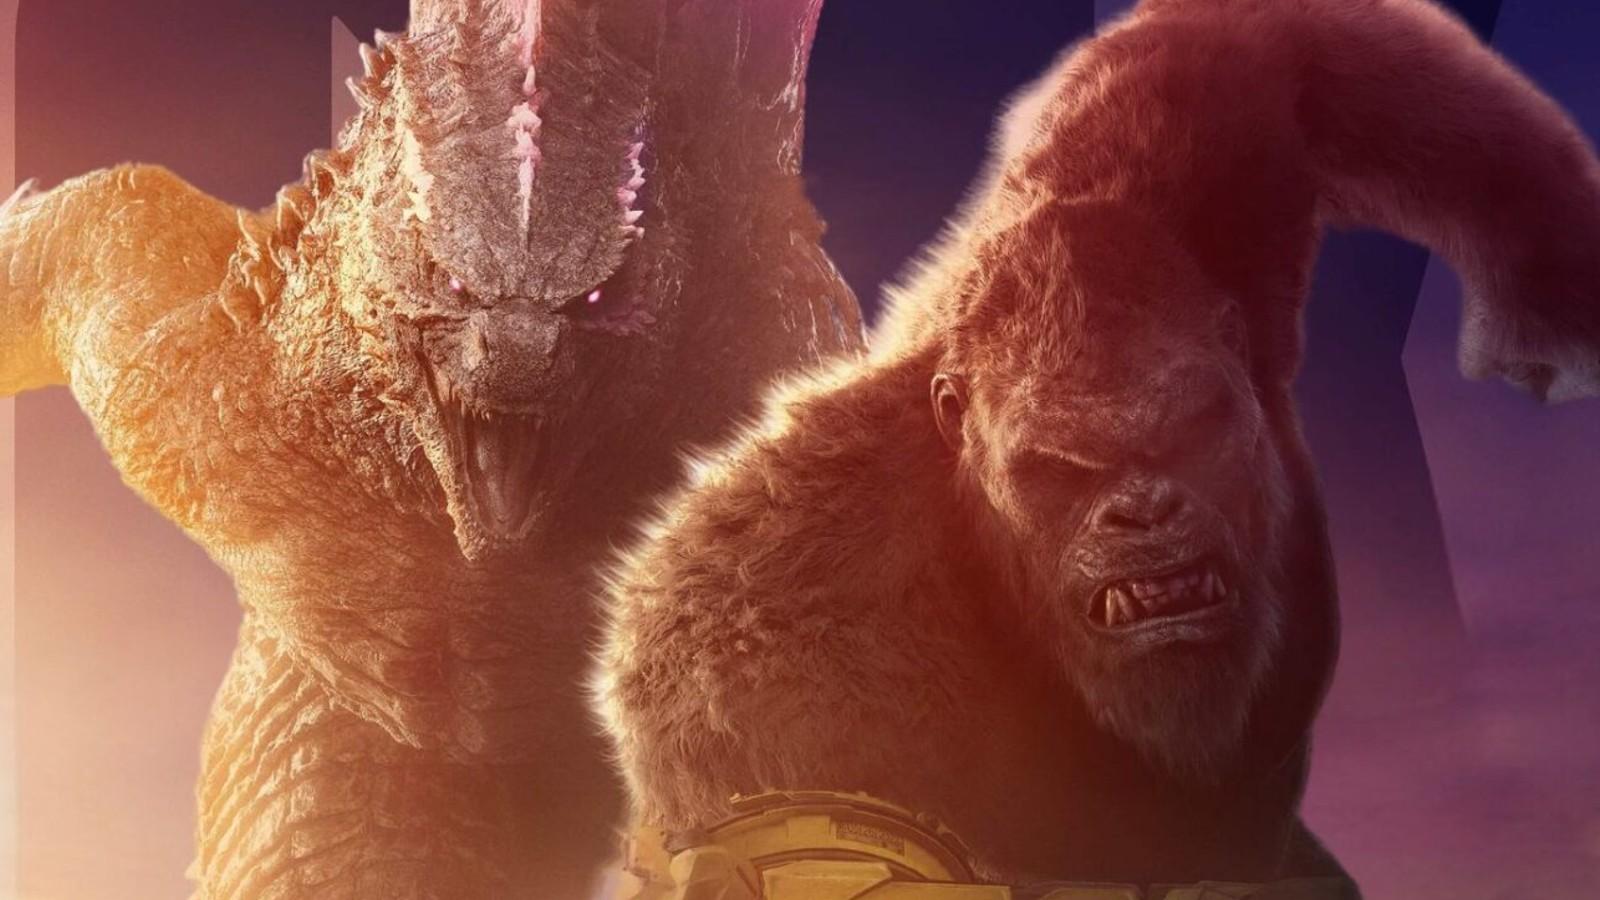 Godzilla and Kong head into battle.